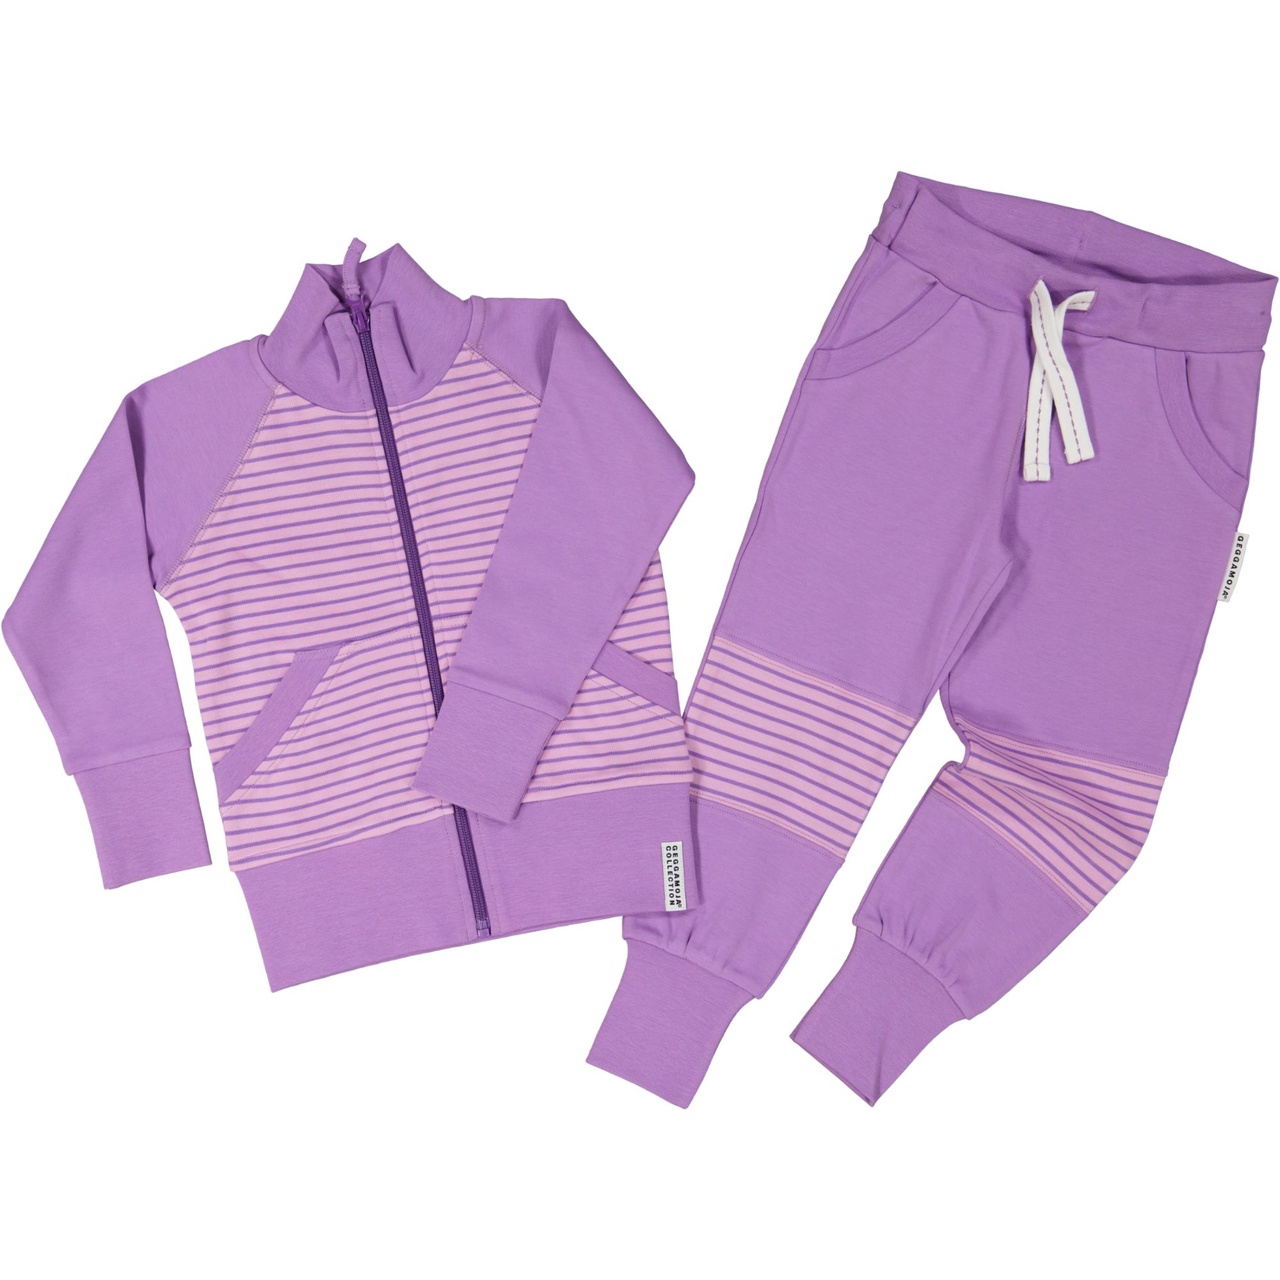 Zip sweater L.purple/purple  134/140